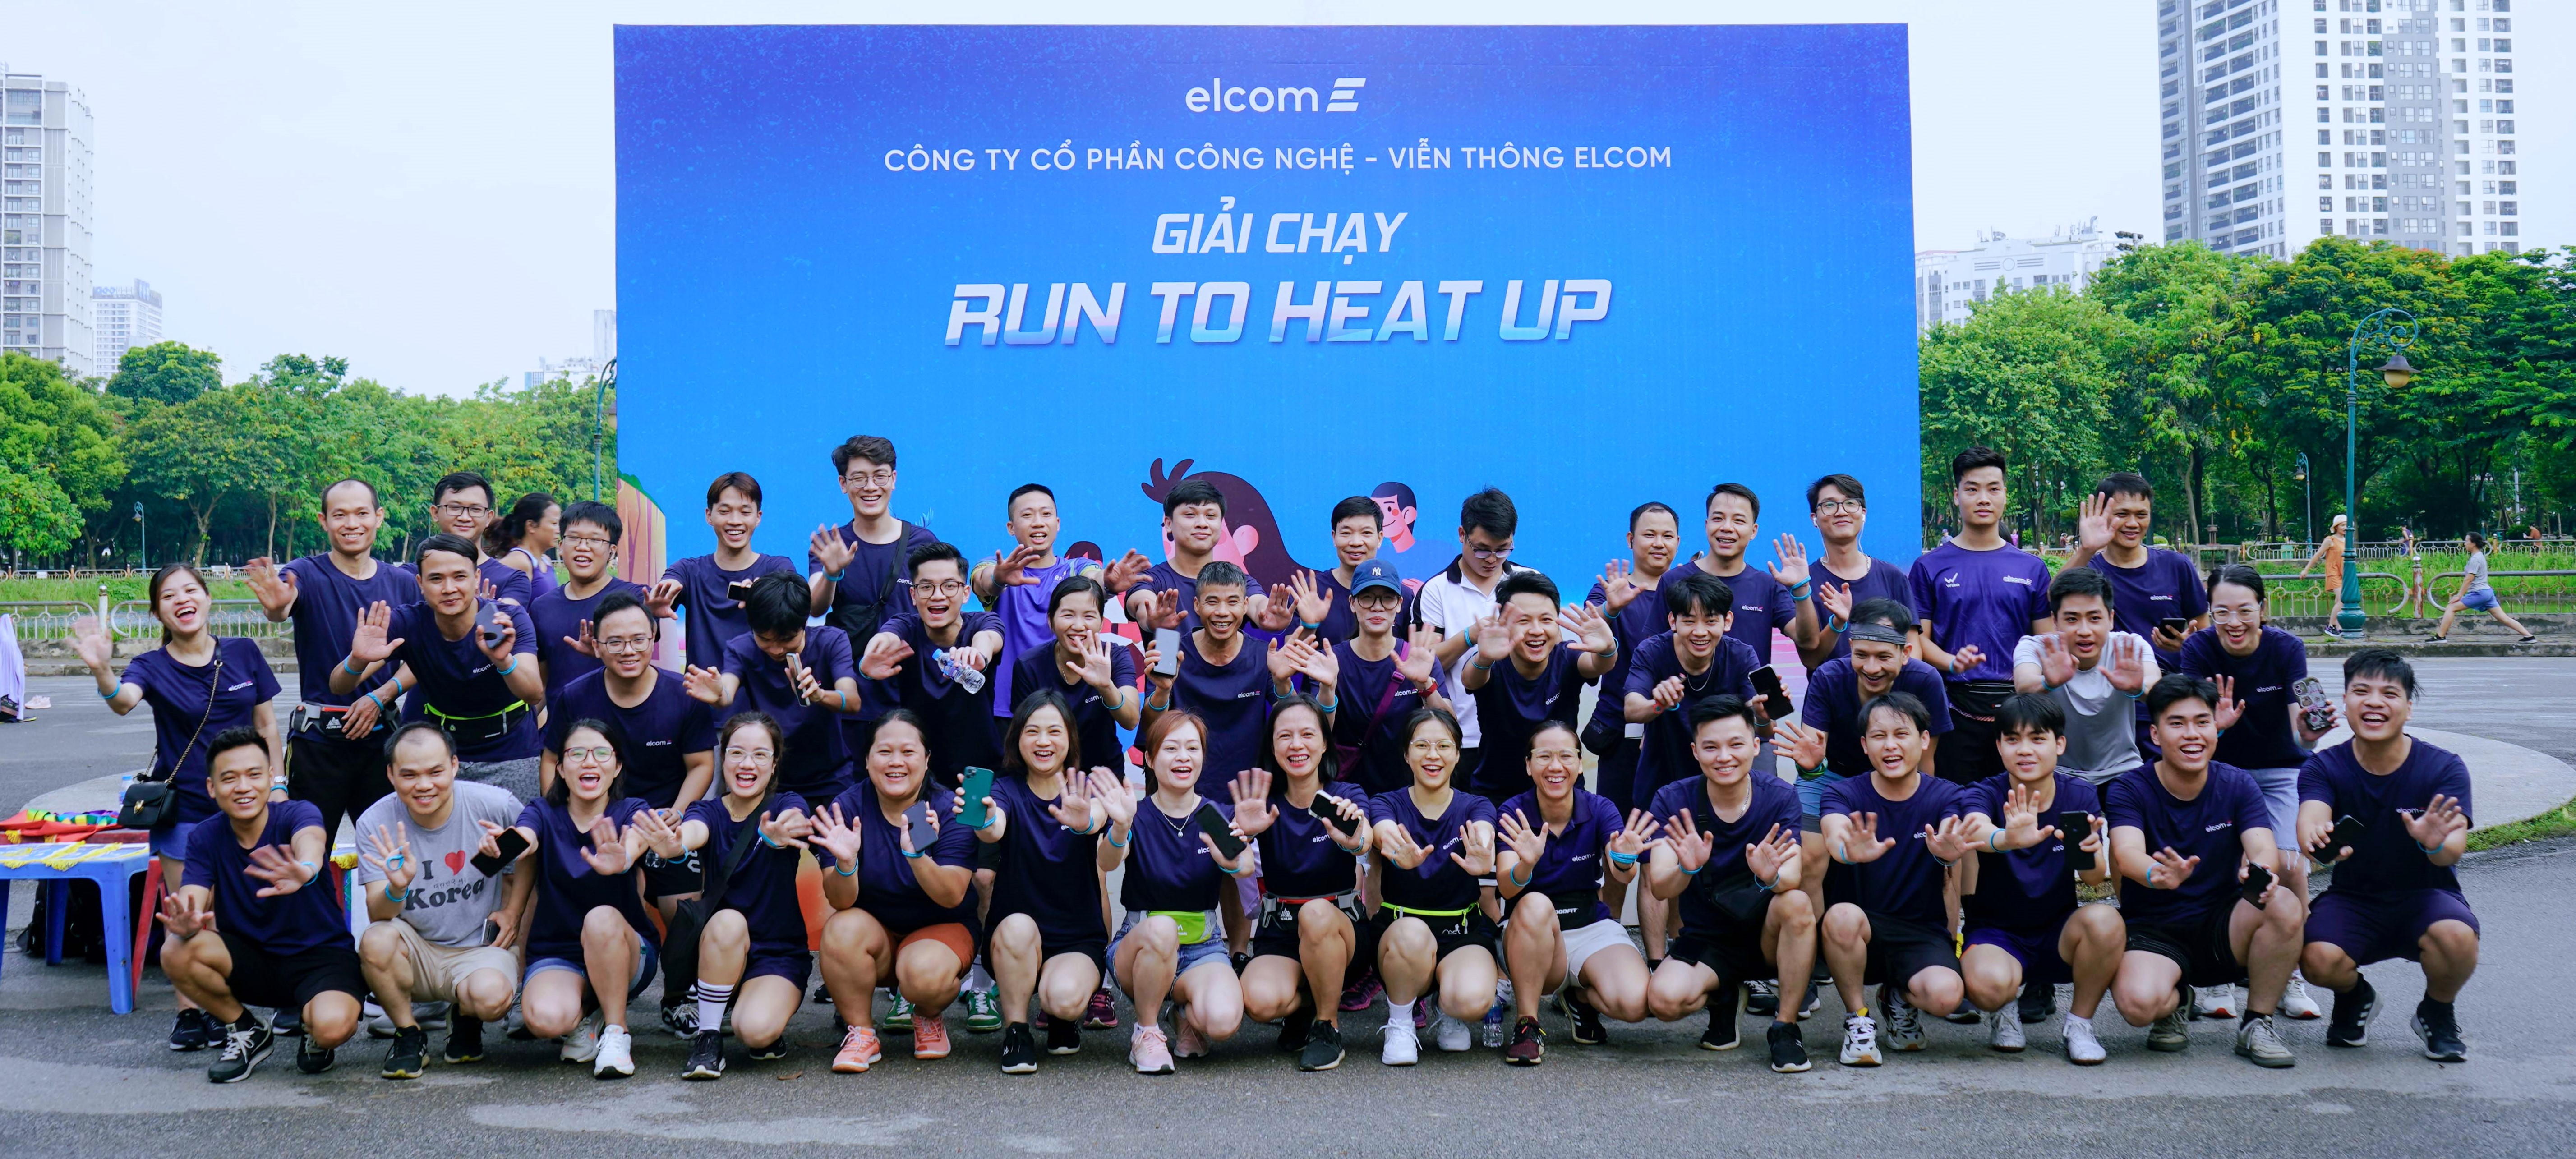 Giải chạy “Run to Heat up”: Elcomer chinh phục thành công đường đua “nóng” nhất hè này